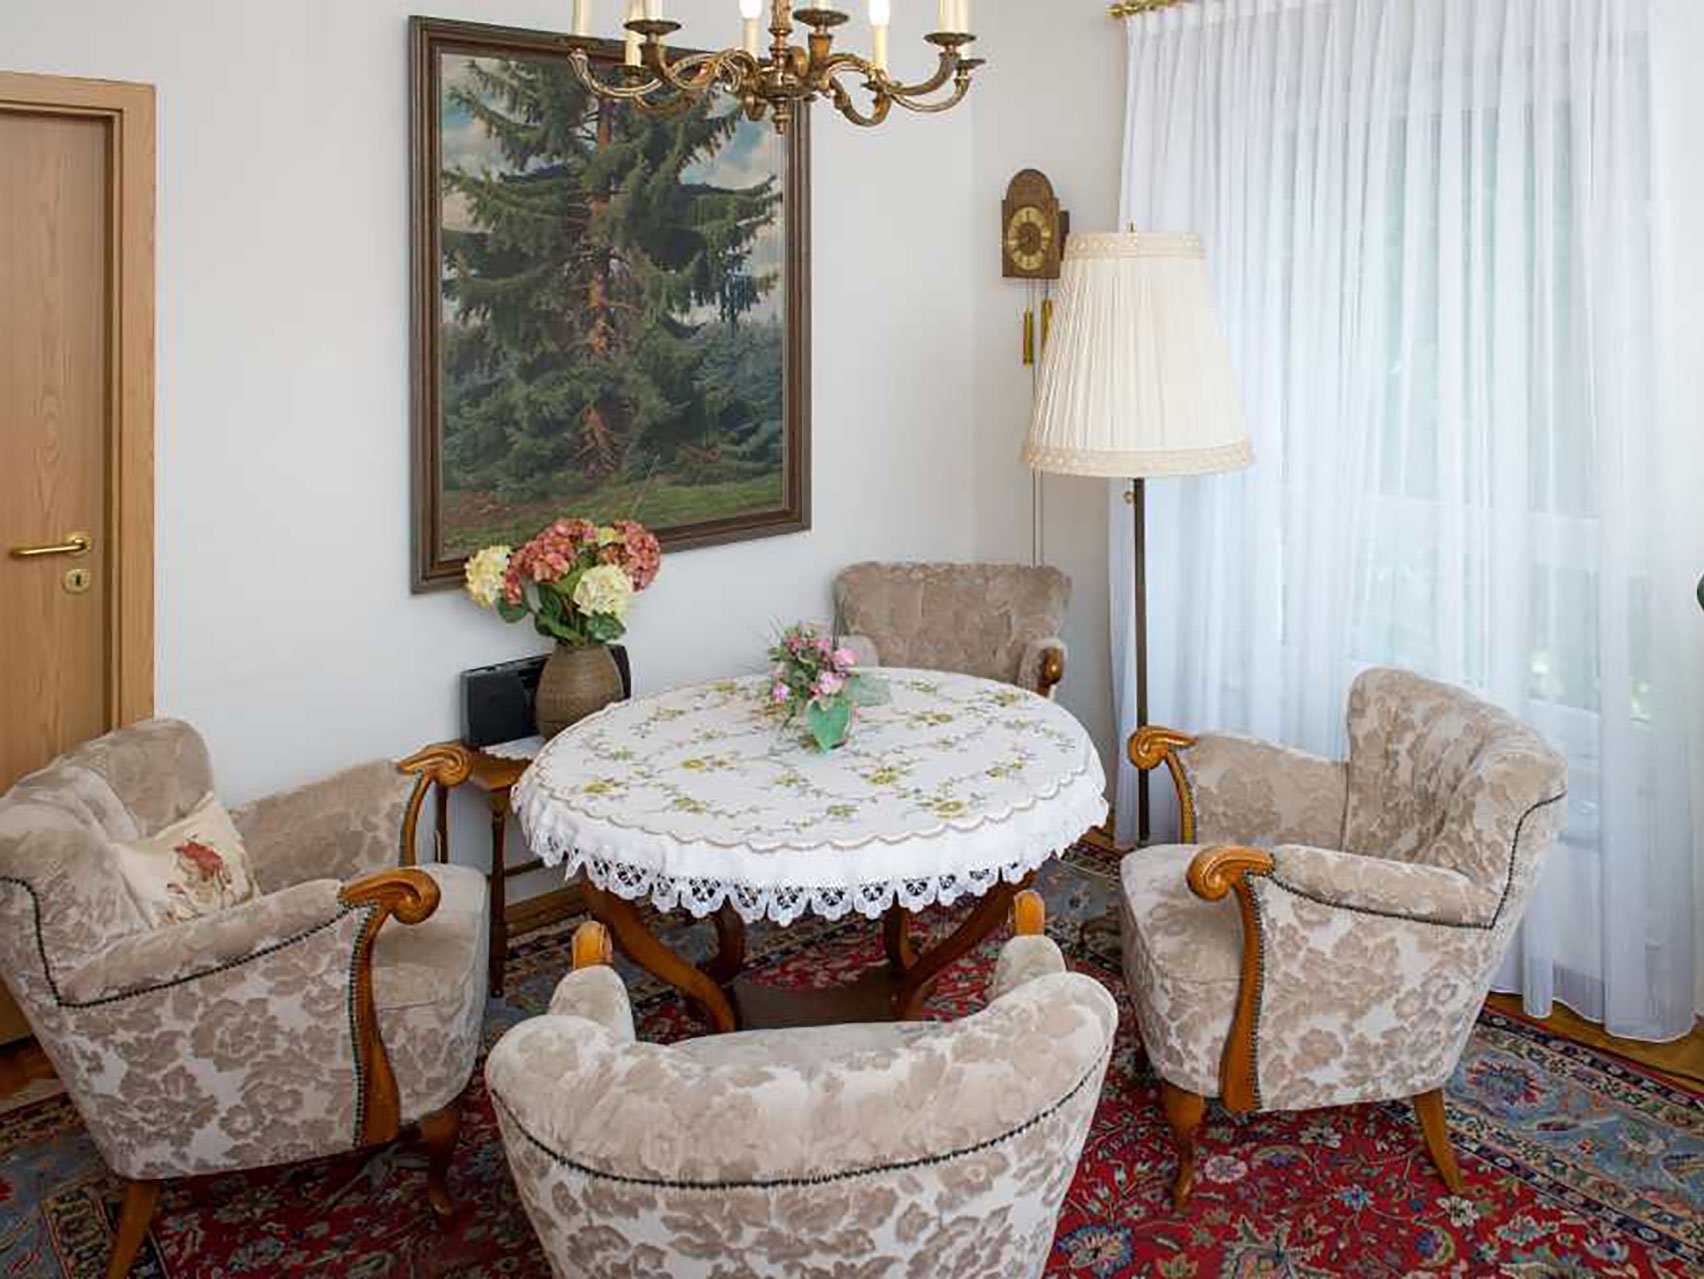 Aufenthaltsraum mit Sesseln, rundem Tisch, Kronleuchter und Gemälde an der Wand